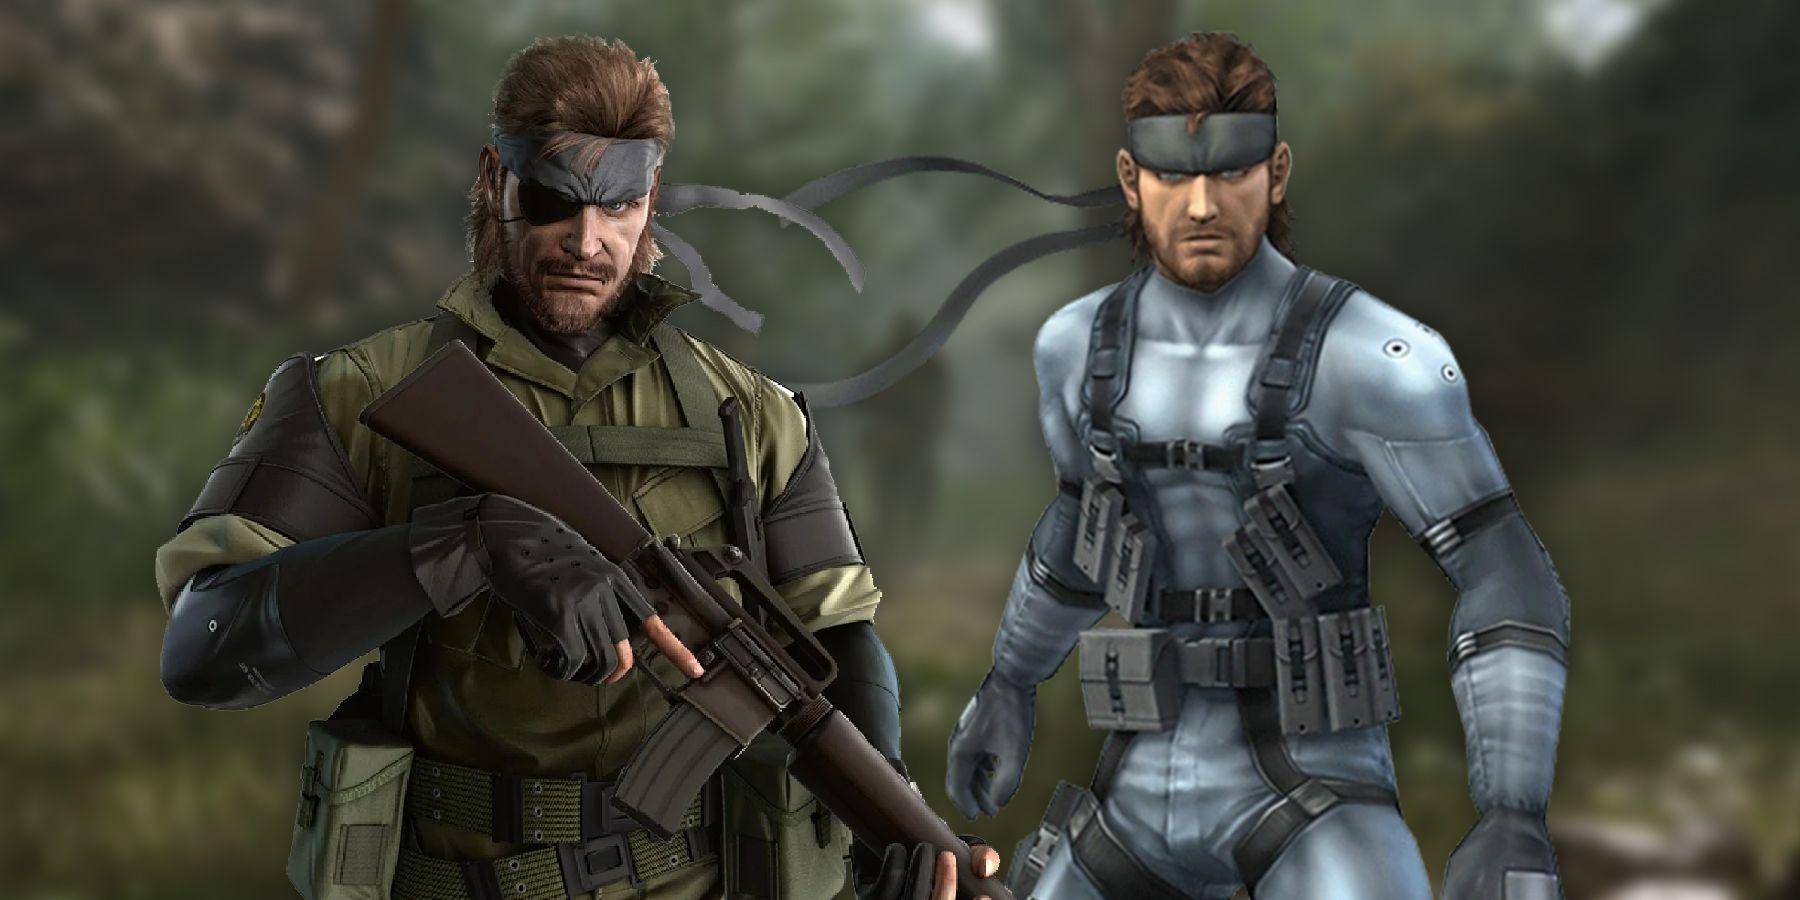 Metal Gear Solid 3 remake is bringing back the OG Solid Snake actor